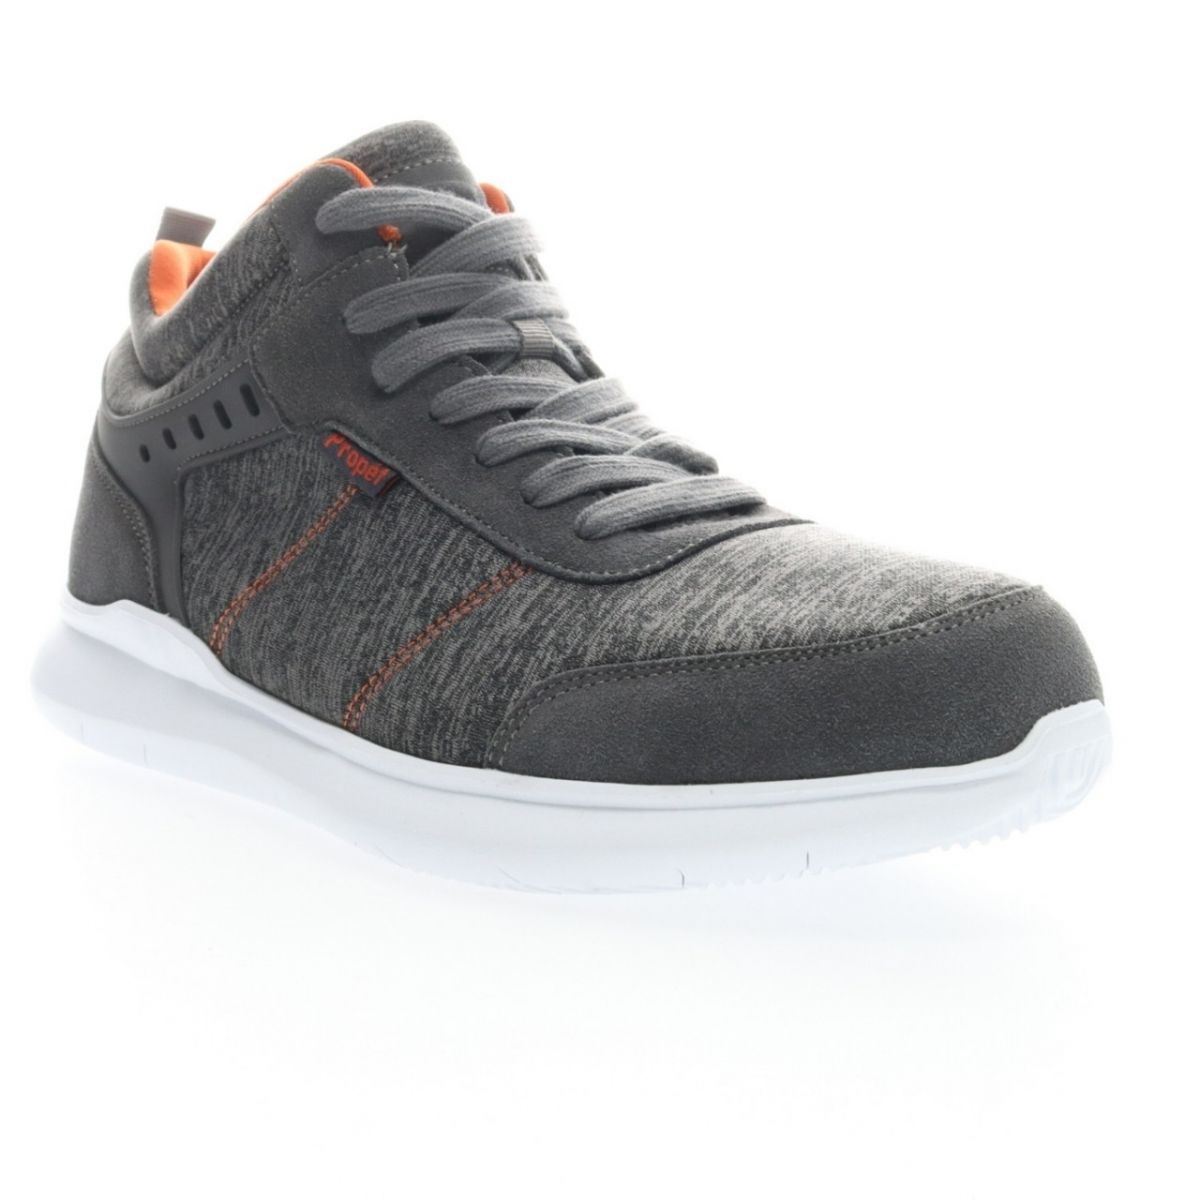 Propet Men's Viator Hi Sneaker Grey/Orange - MAA112MGOR Grey/orange - Grey/orange, 16 XX-Wide